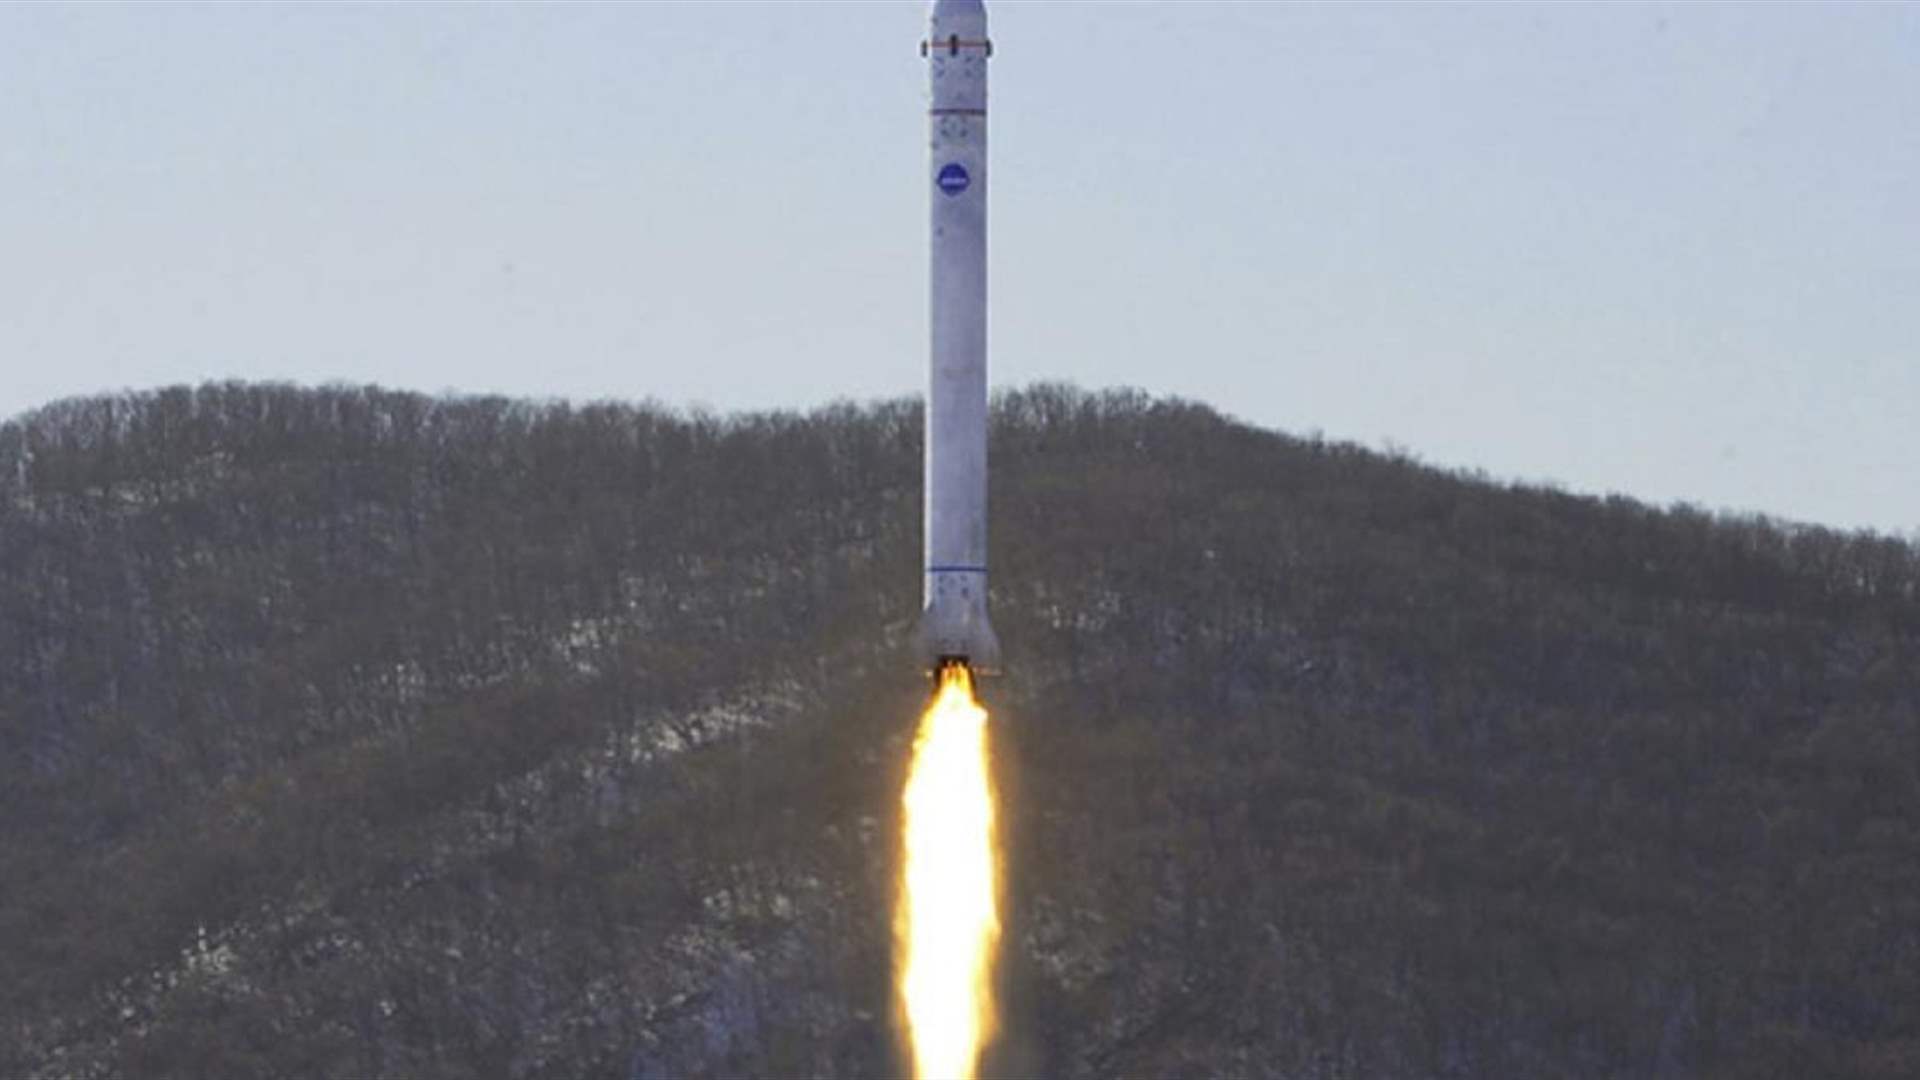 اليابان تطلق تحذيراً لسكّان أوكيناوا عقب إطلاق كوريا الشمالية صاروخاً